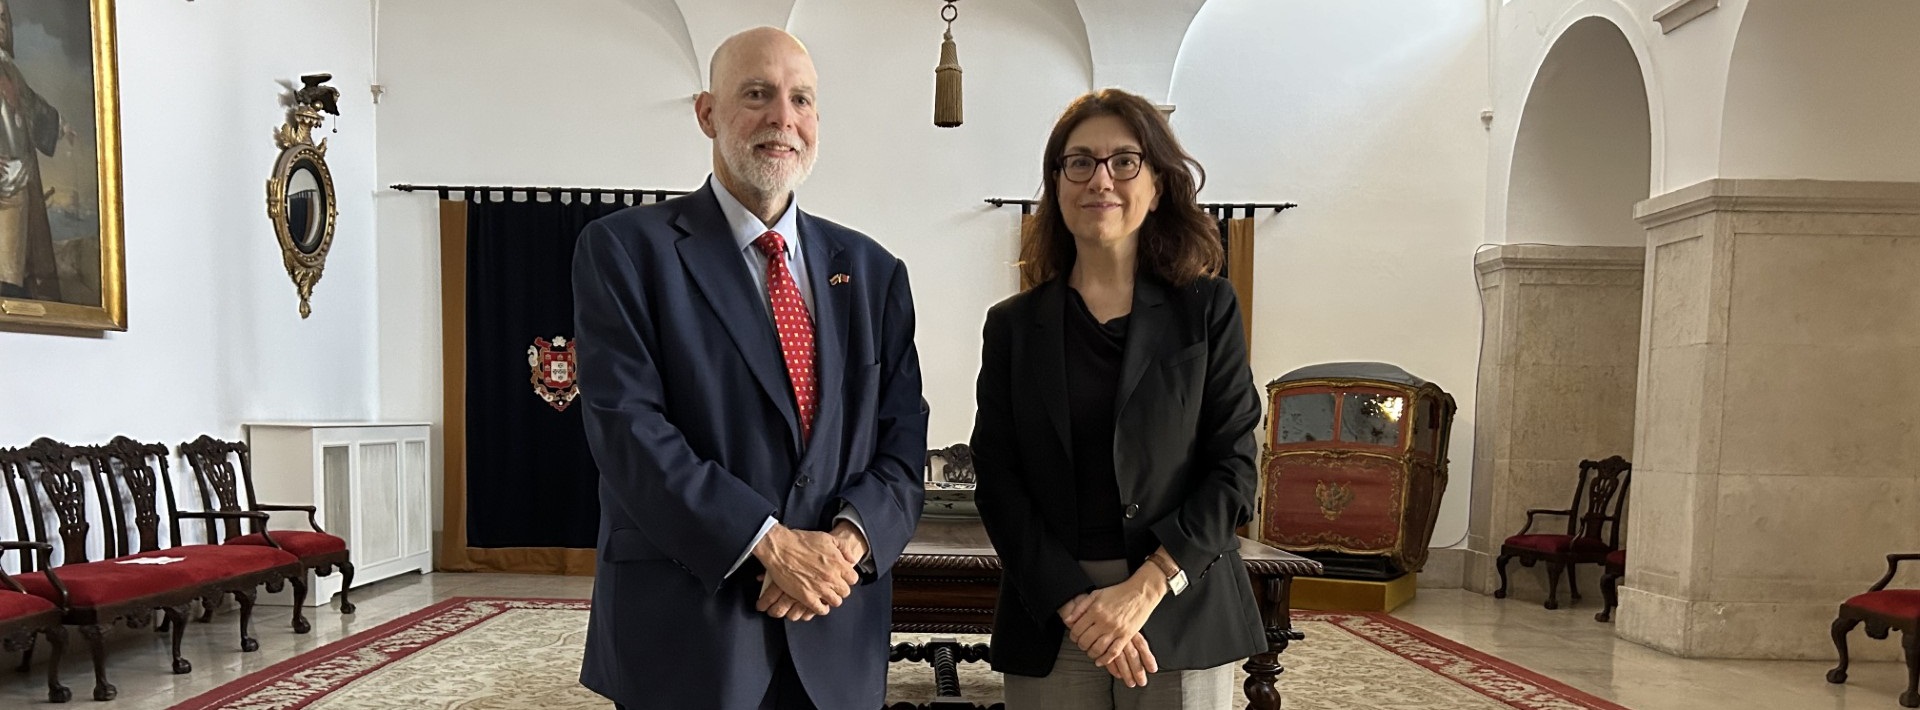 Embajador de Colombia efectúa visita de cortesía a alta diplomática portuguesa